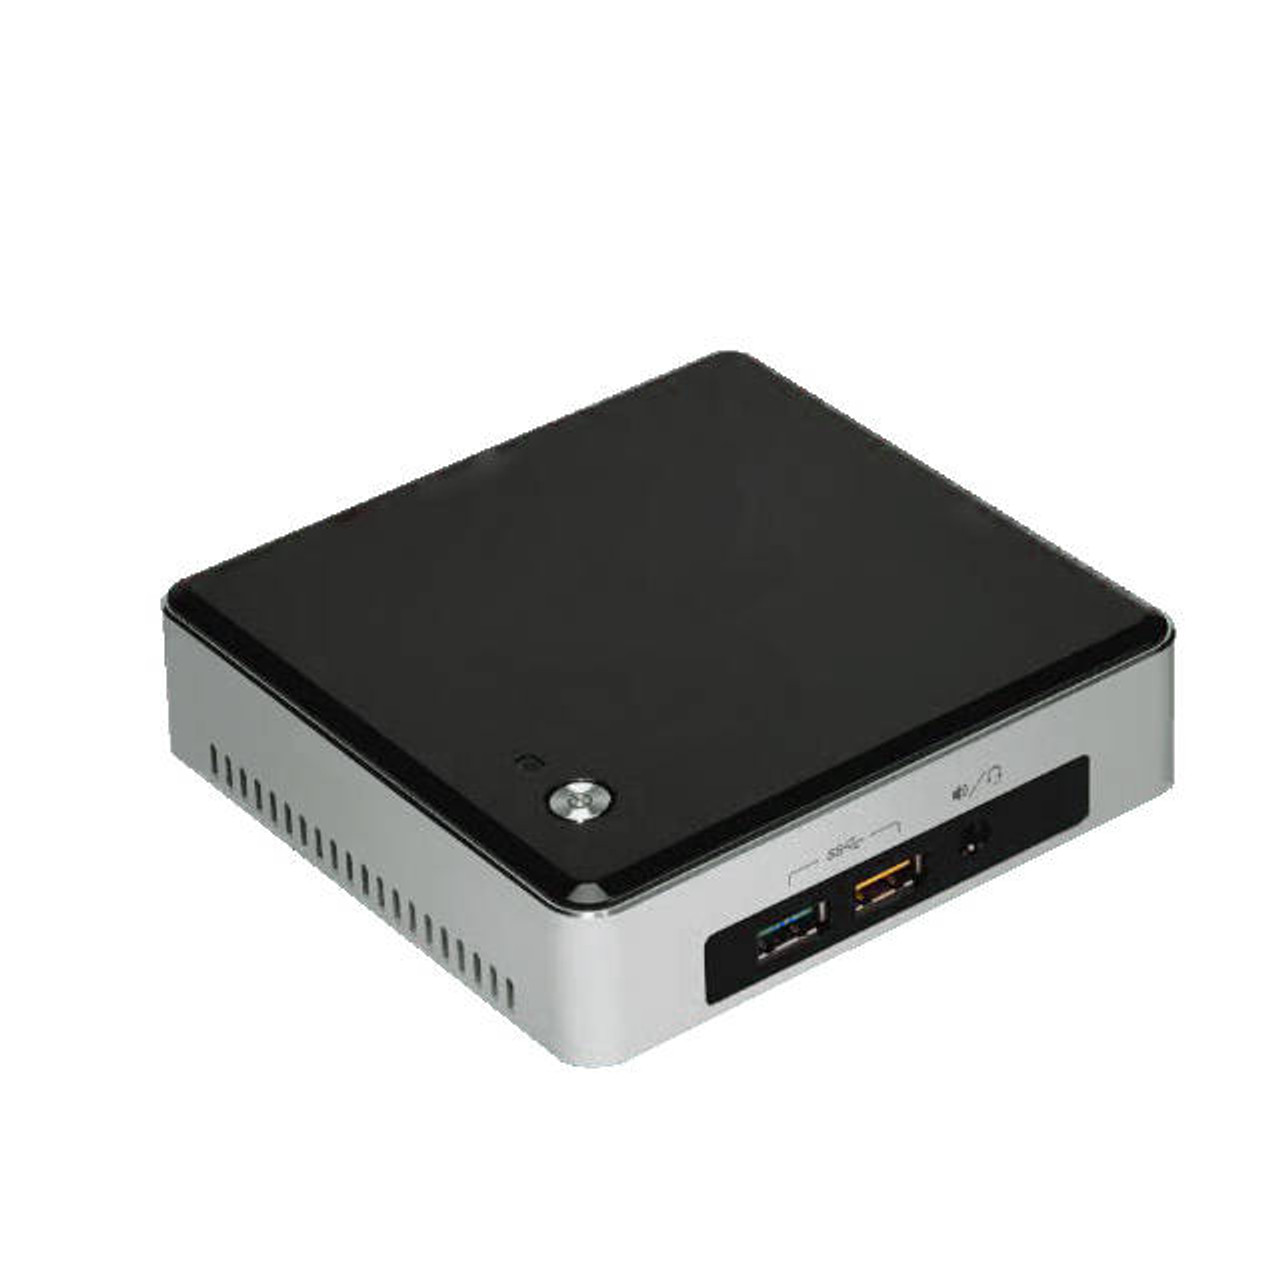 Intel NUC kit BOXNUC5I3RYK Intel Core i3-5010U 2.1GHz/ DDR3L/ USB3.0/ M.2/ A&V&GbE/ Mini PC Barebone System